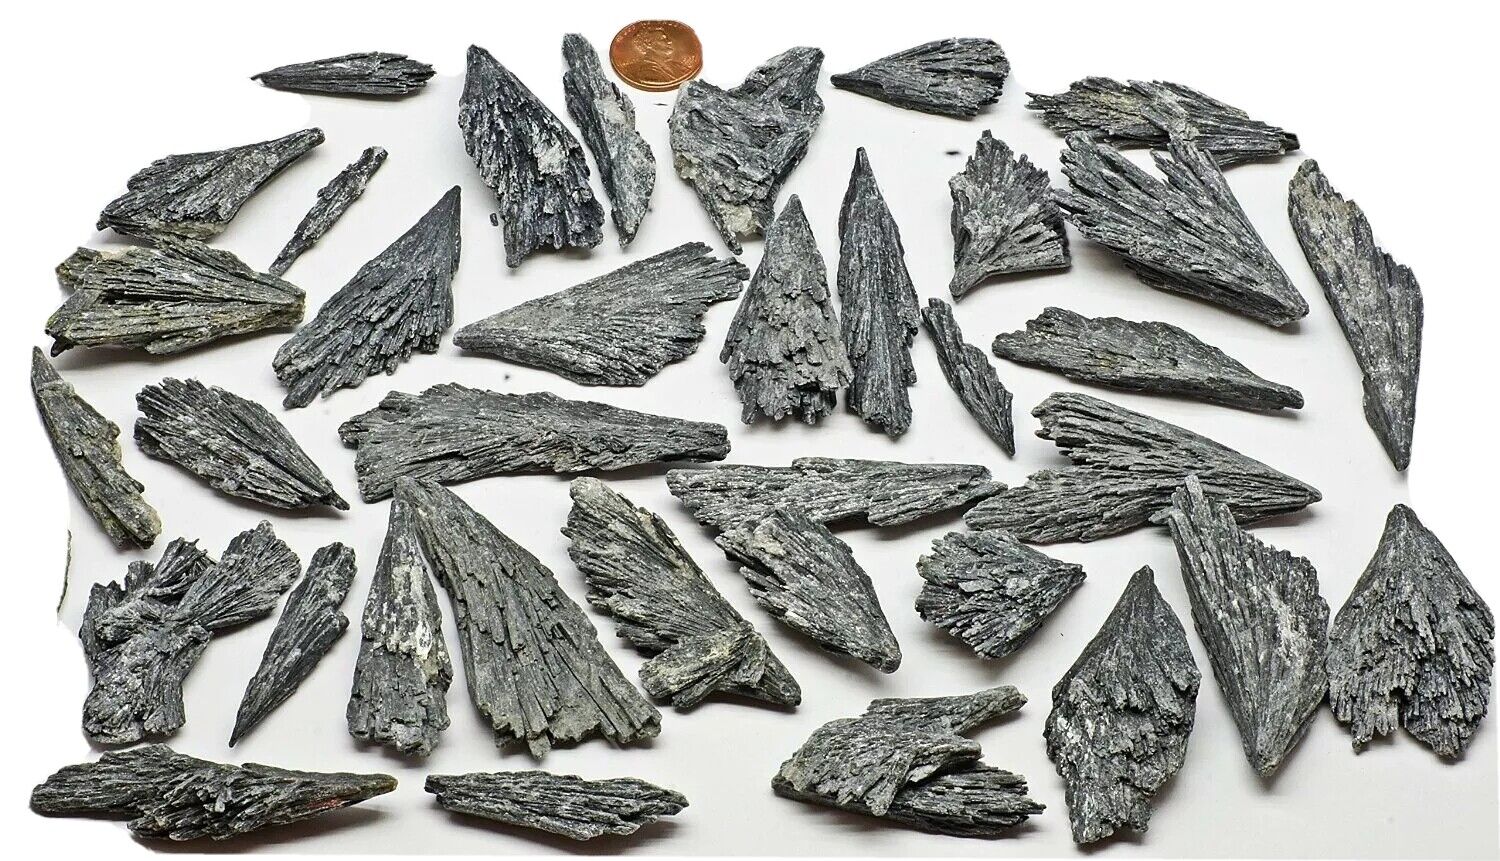 1 lb black kyanite fans wholesale lot pound closeout BEST DEAL ON THE NET